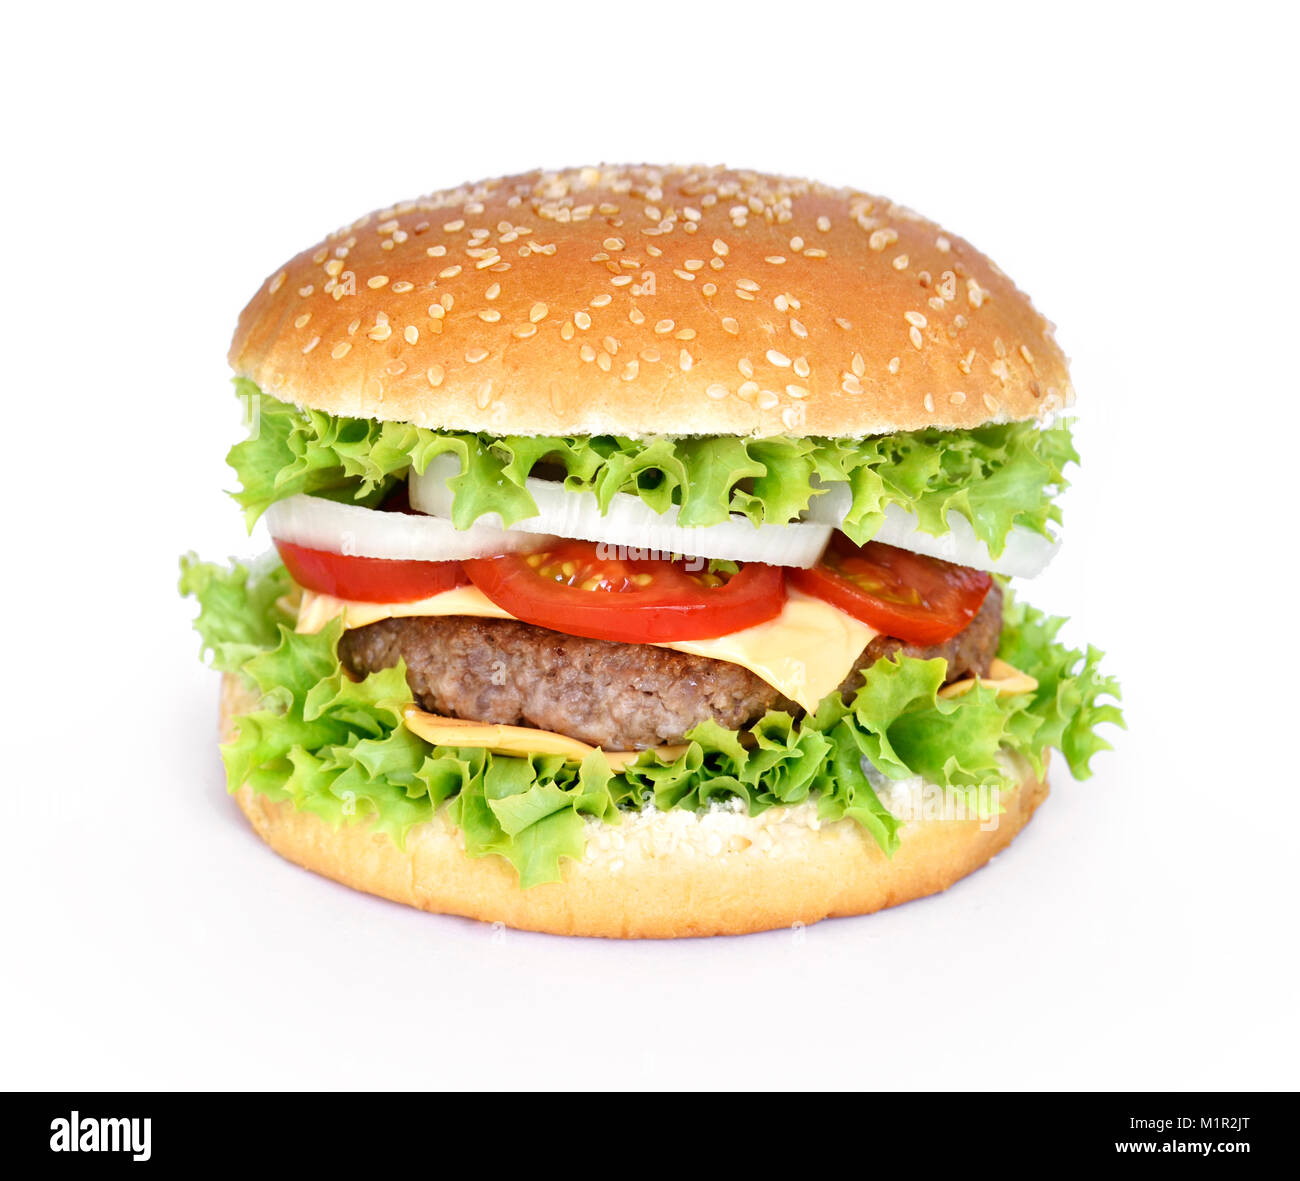 Deliziosi burger, hamburger o cheeseburger con insalata fresca, pomodori e cipolle. Gourmet Burger con carne di manzo patty, isolato su sfondo bianco. Foto Stock